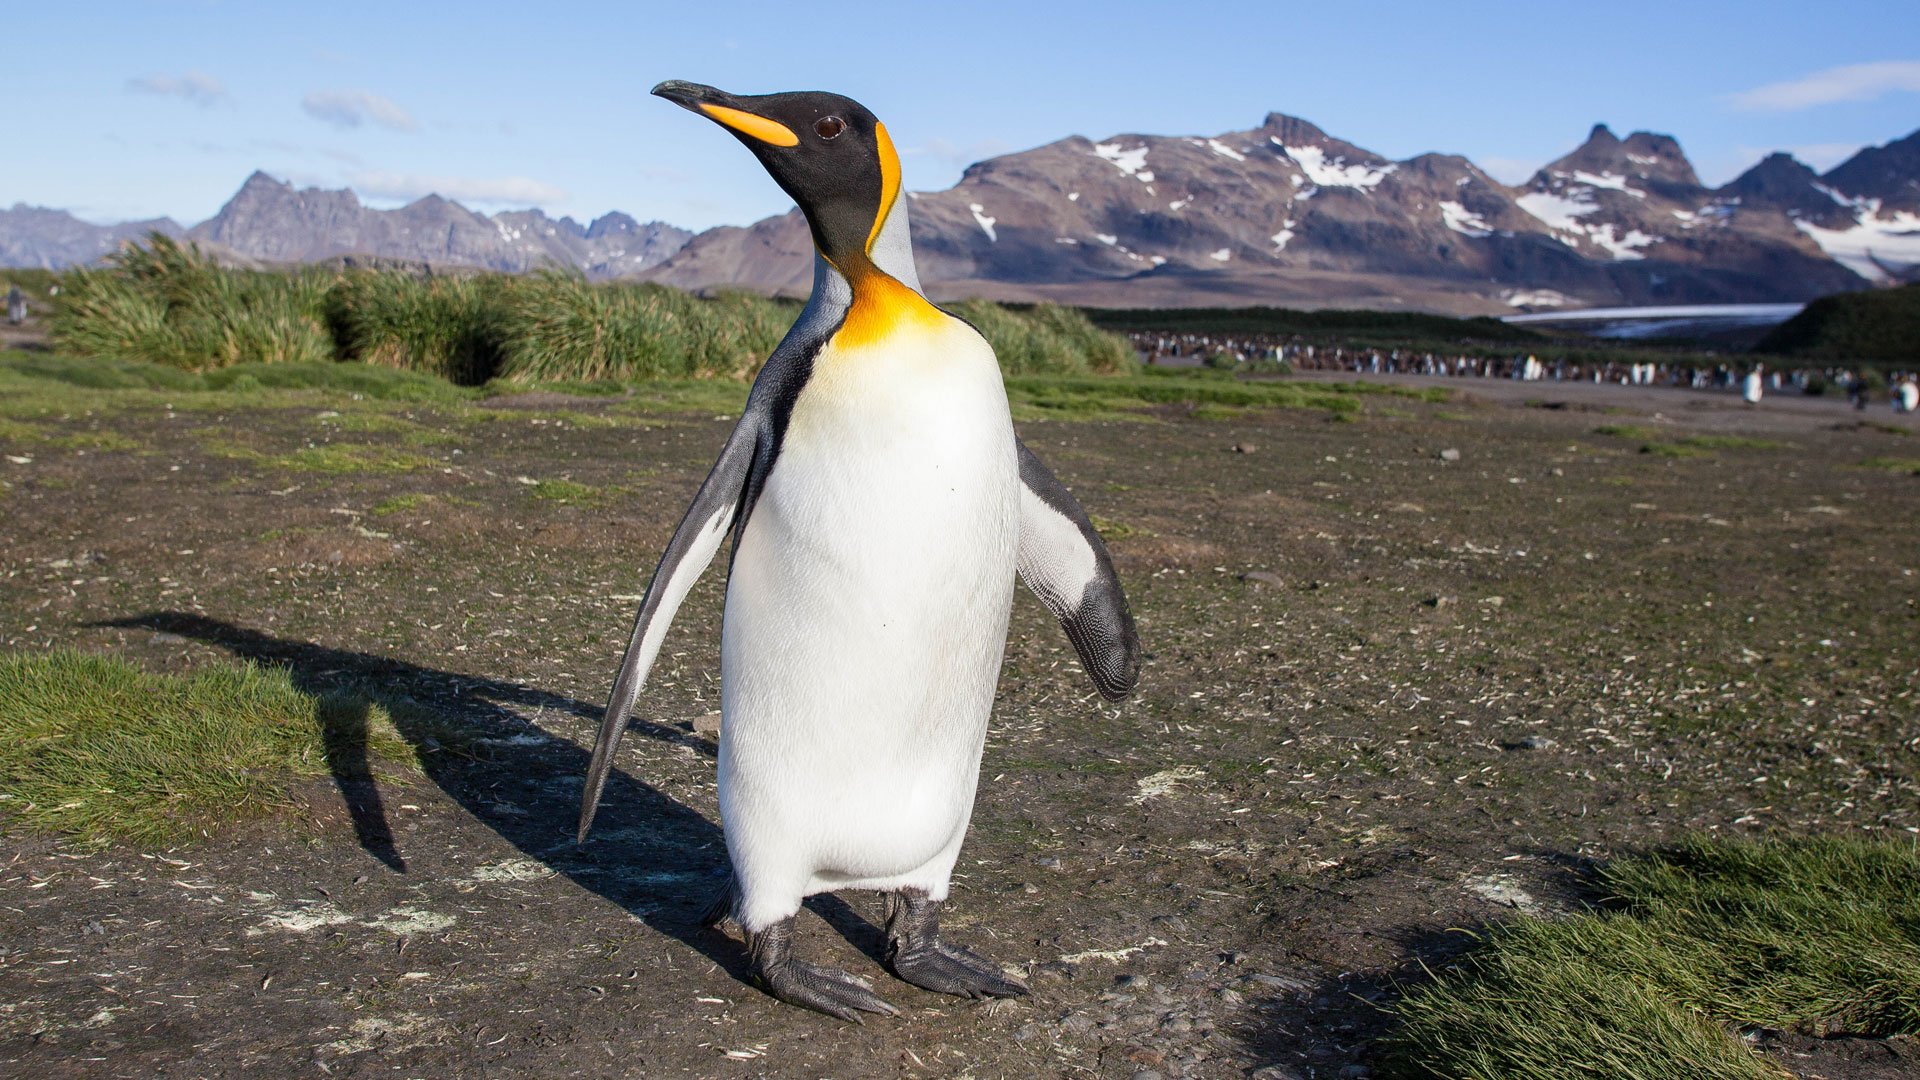 Intra-science - Quelle est la différence entre un manchot et un pingouin ?